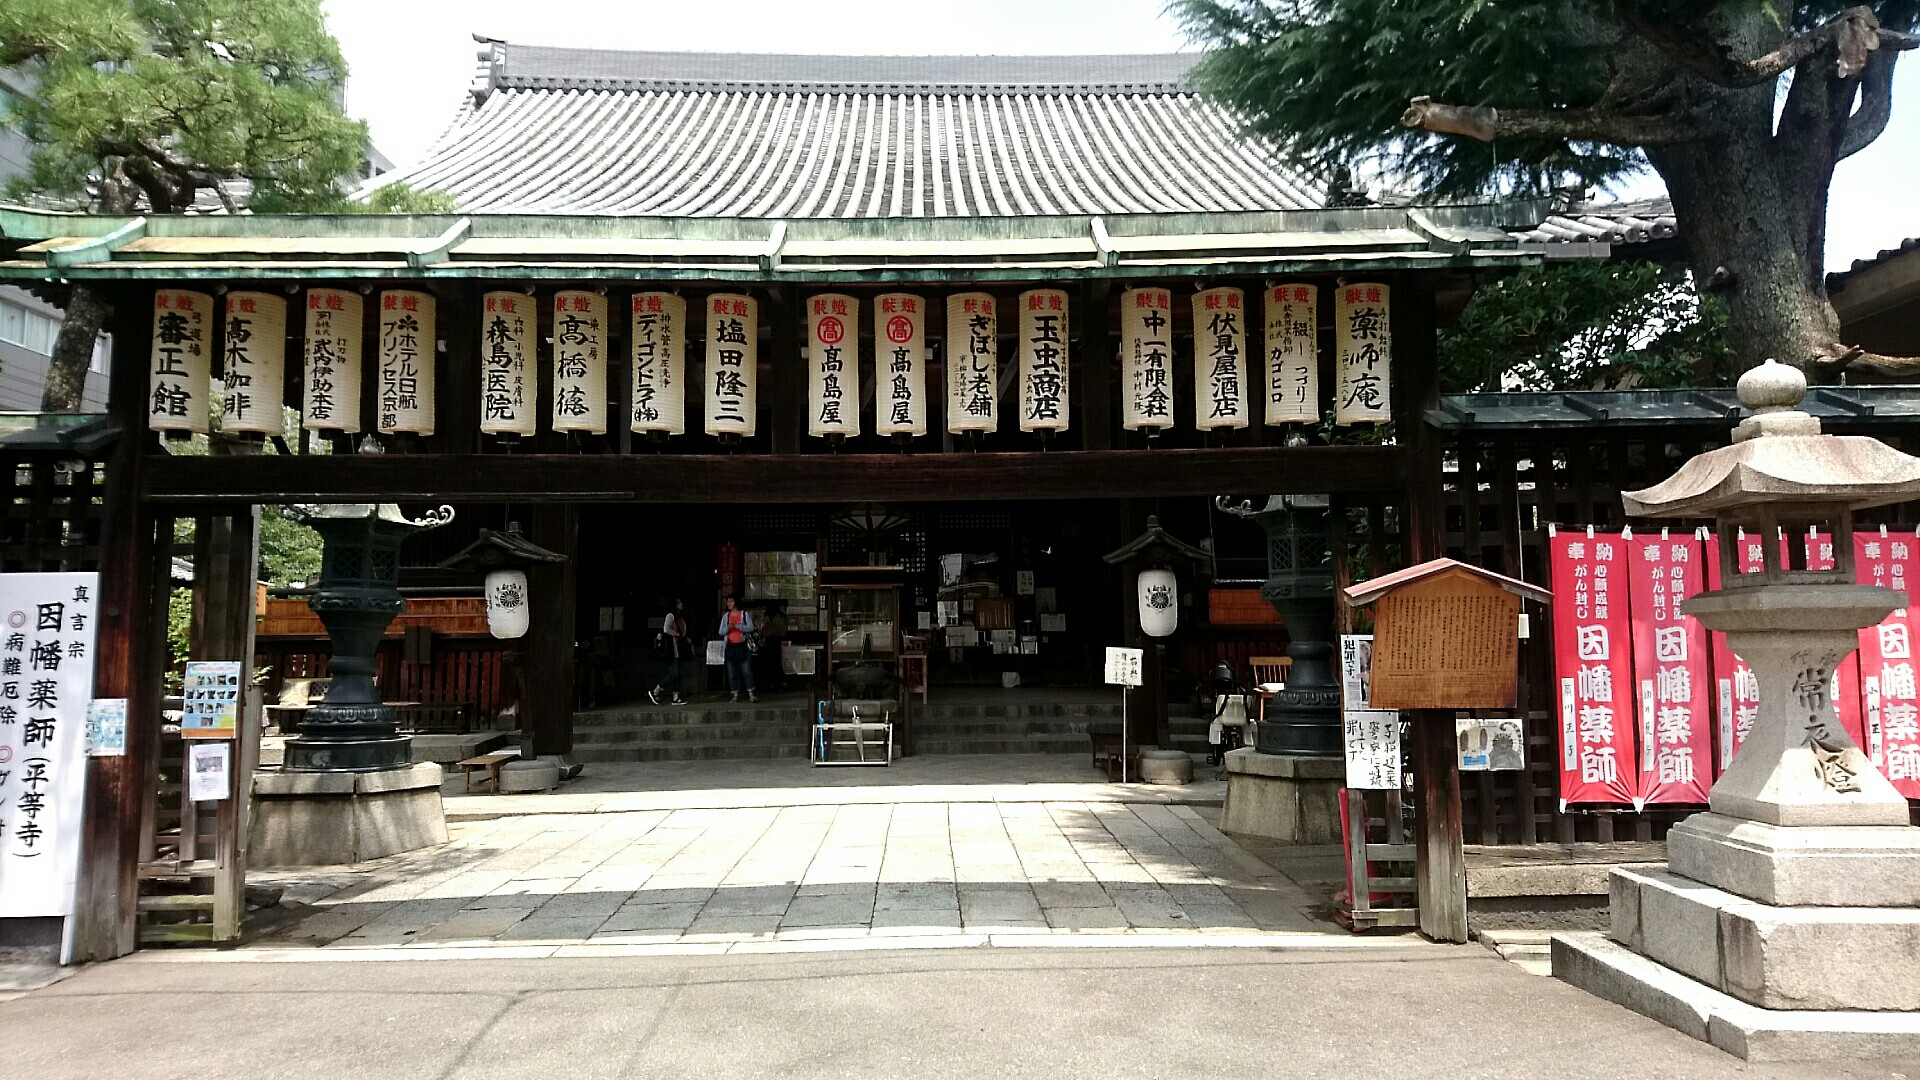 京都烏丸にあるガン封じで有名なお寺 因幡堂 いなばどう 松原 都つーしん みやつー 都つーしん みやつー